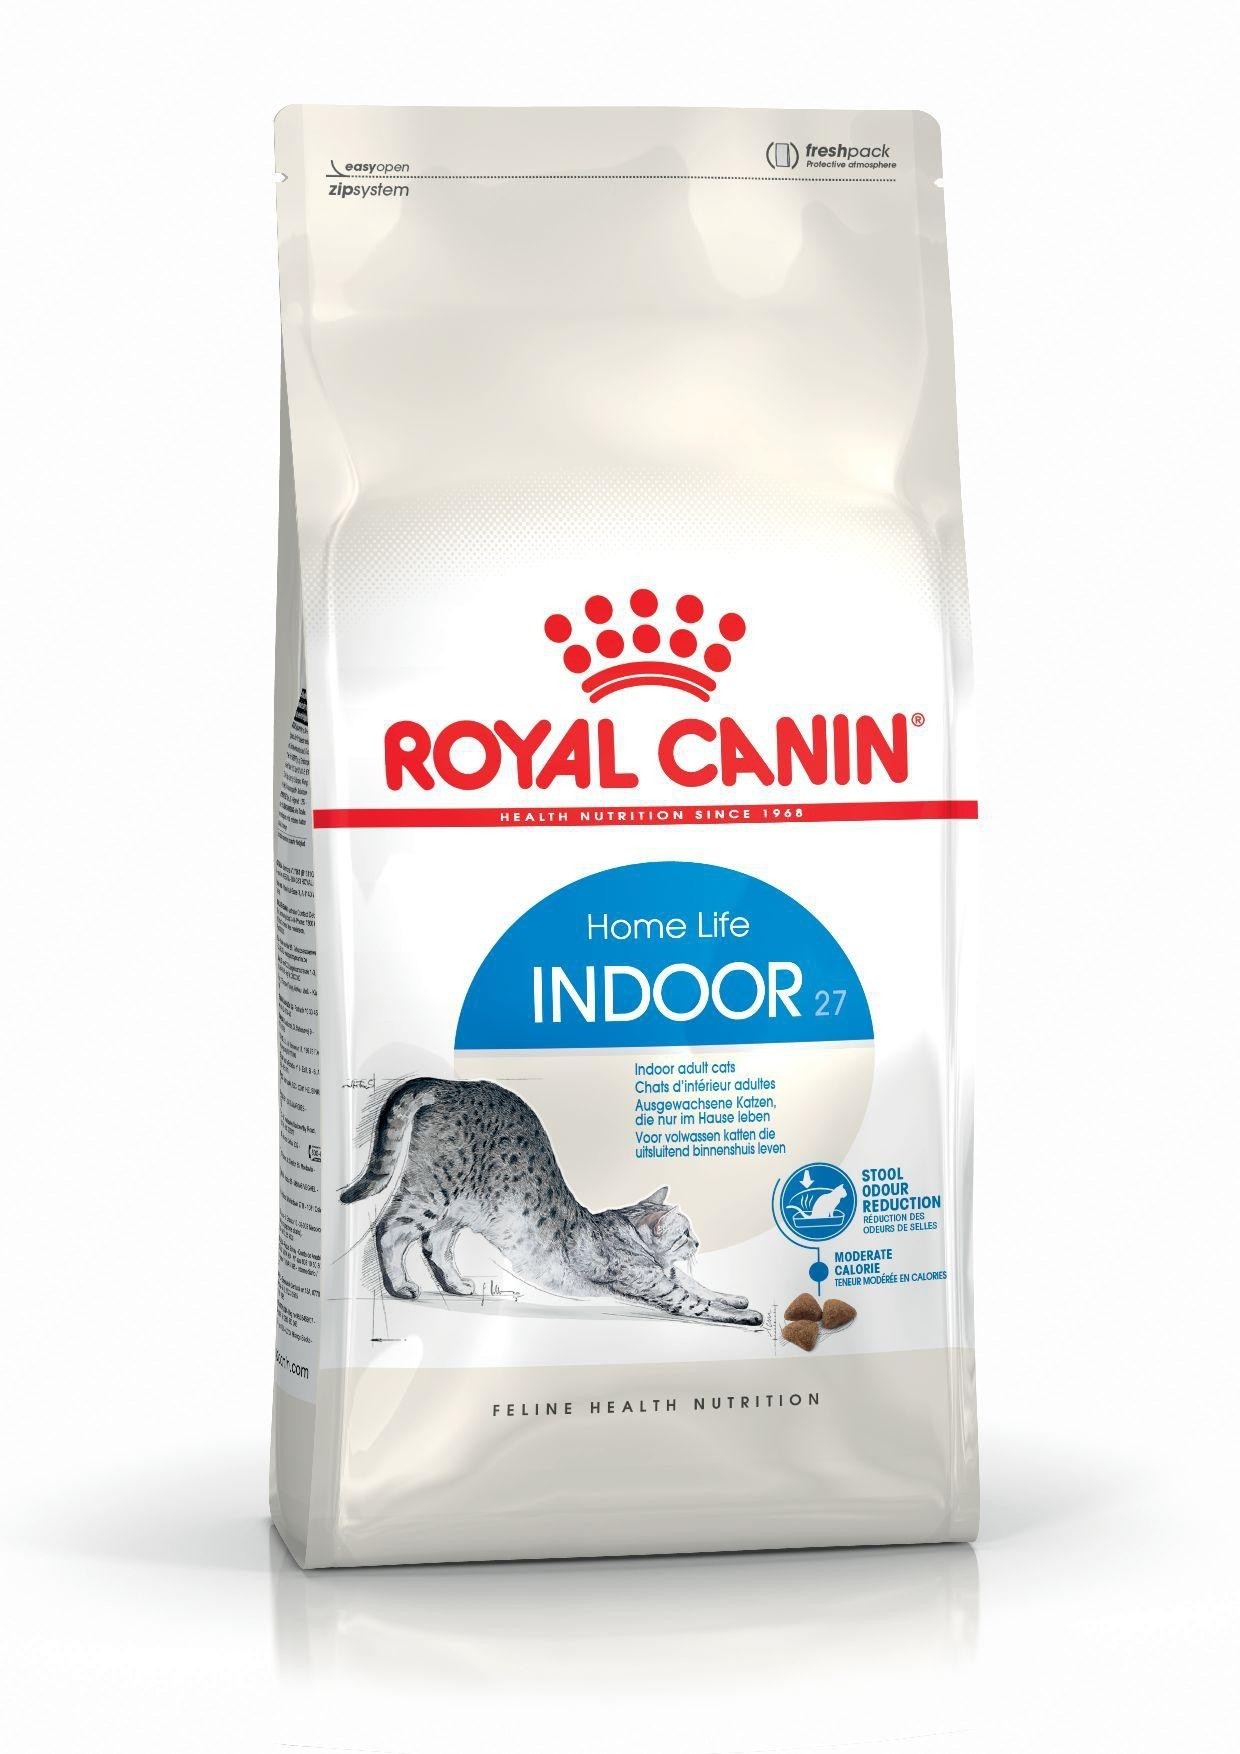 Royal Canin Indoor 27 karma sucha dla kotów dorosłych, przebywających wyłącznie w domu